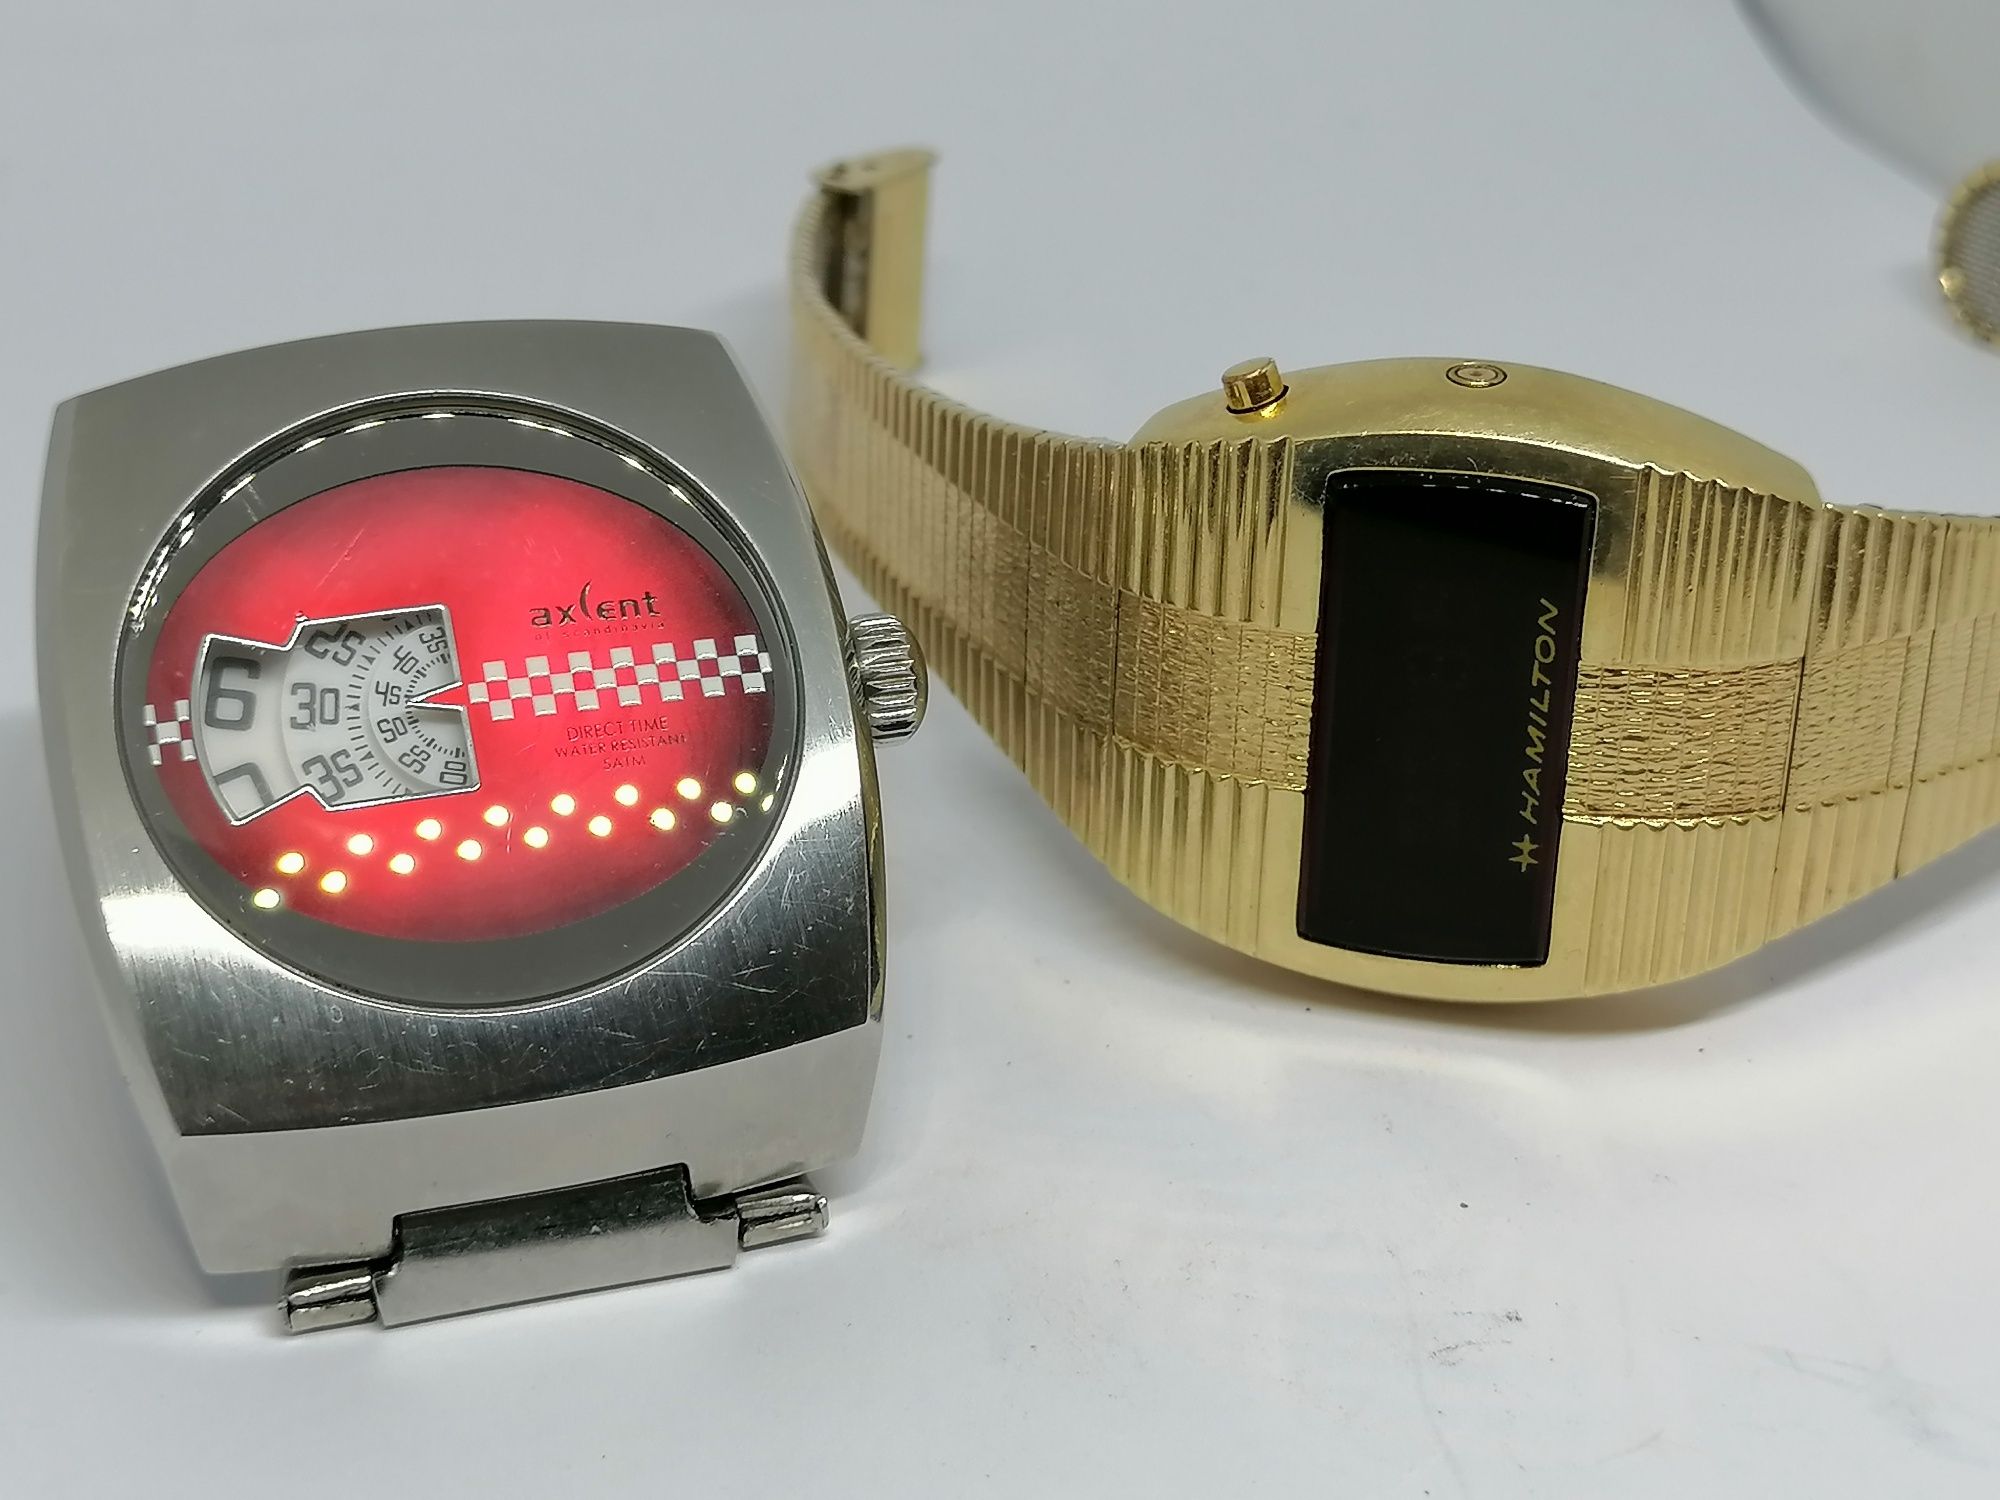 Швейцарски кварцов часовник Axent 2005 г